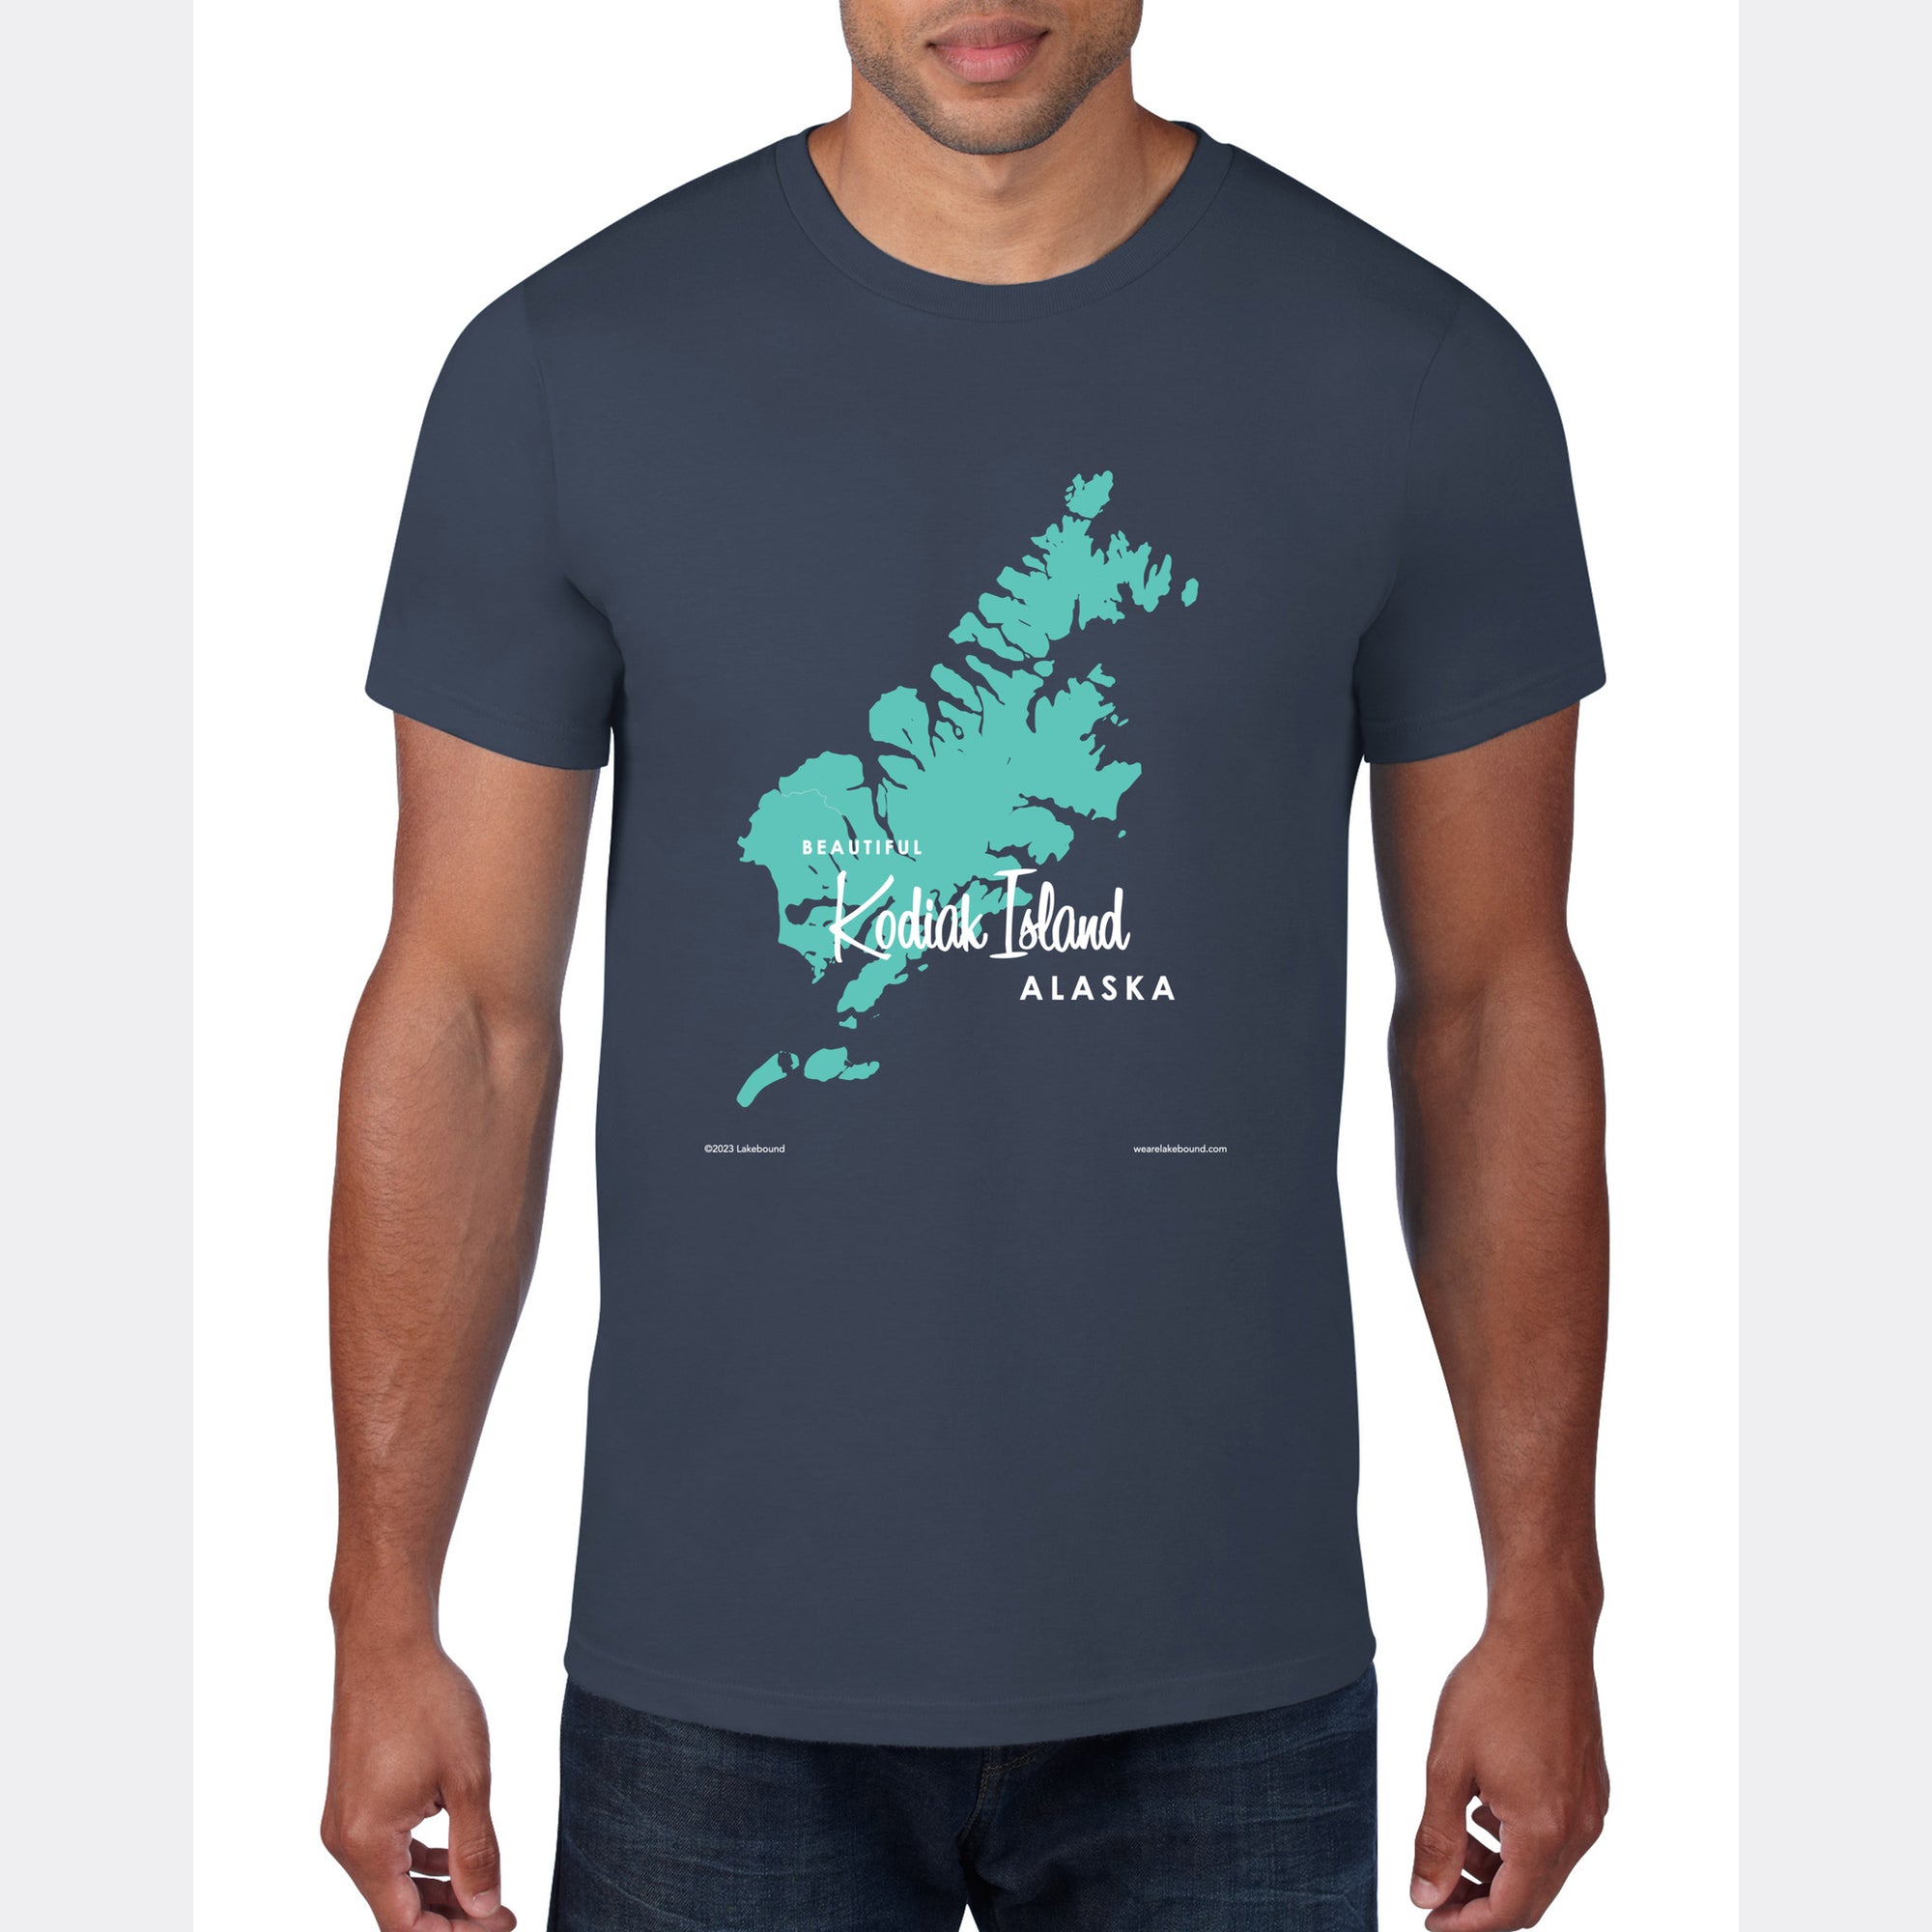 Kodiak Island Alaska, T-Shirt